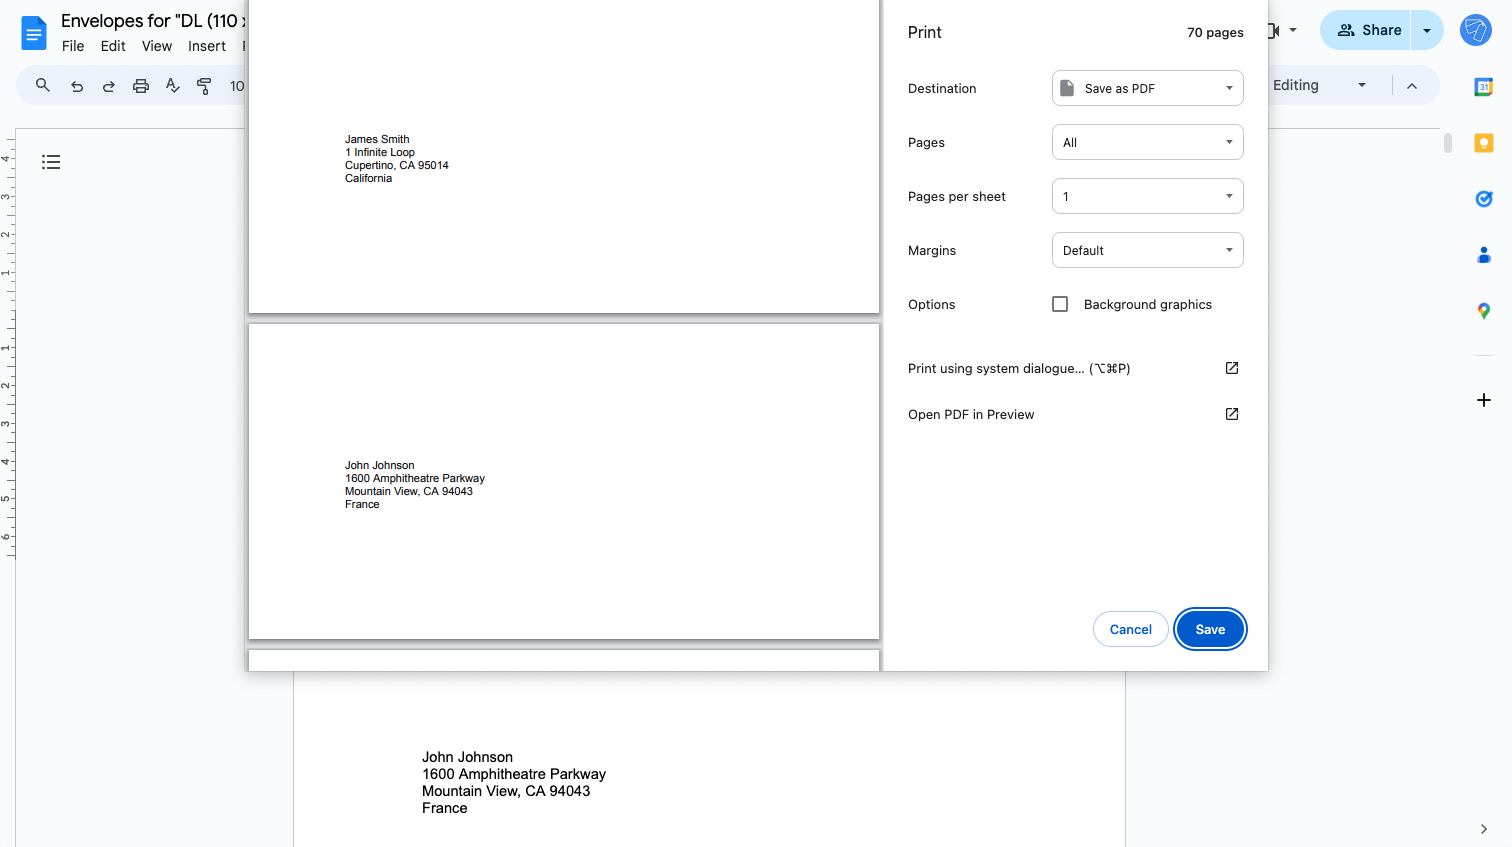 Print envelopes menu in Google Docs